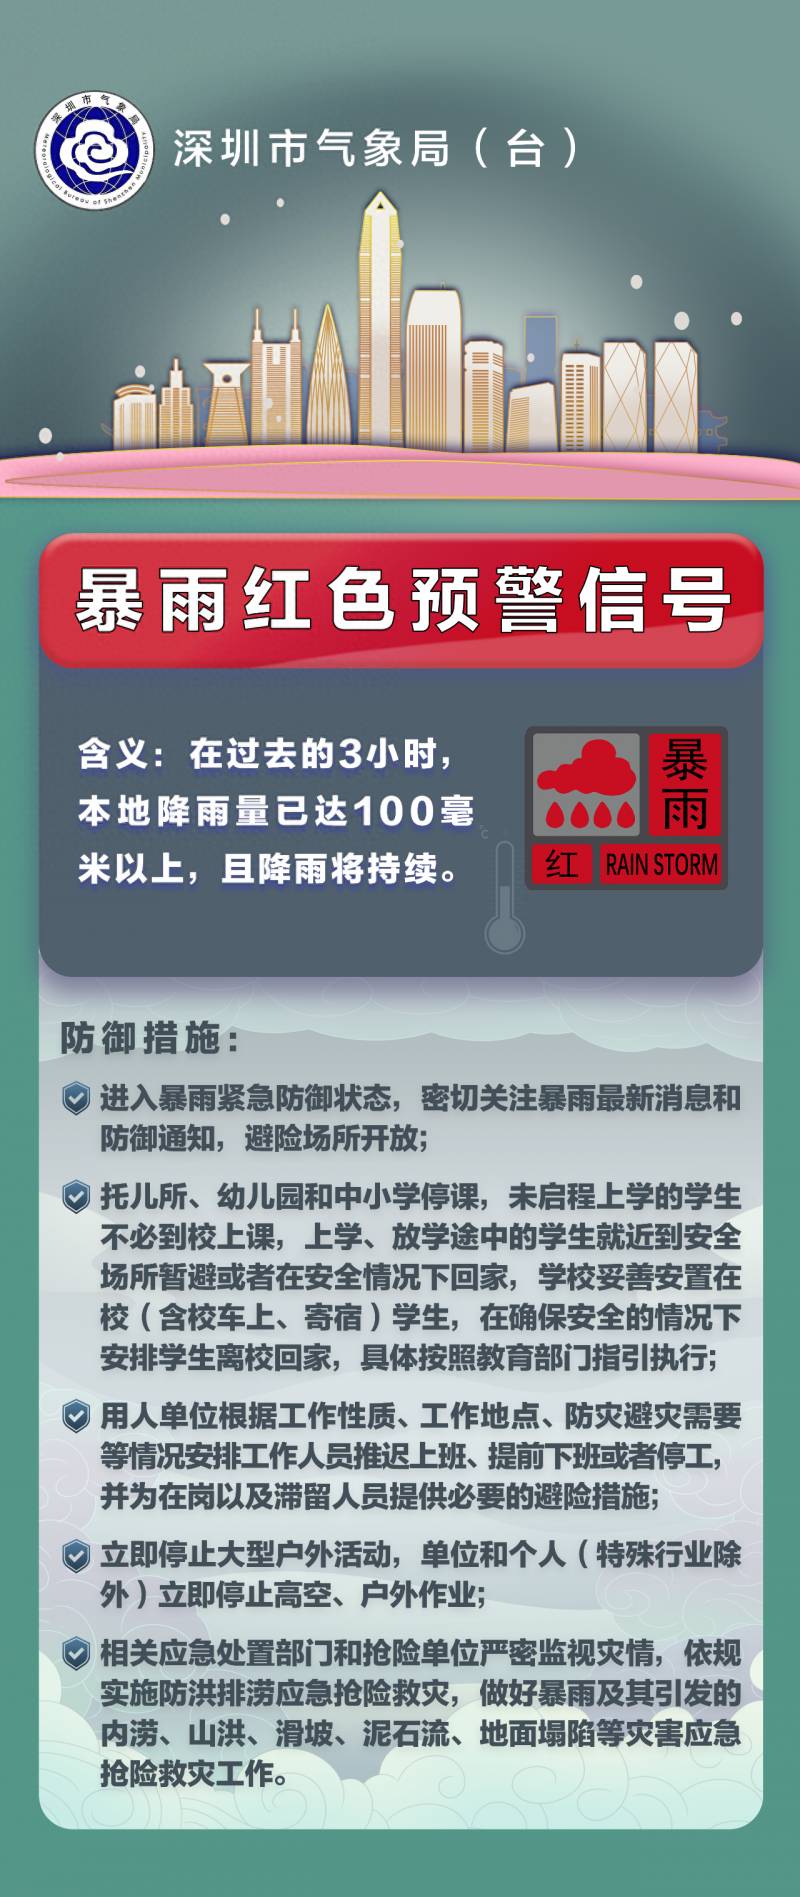 深圳信息网的微博，深圳发布今年首个暴雨红色预警信号，未来一周持续关注暴雨及强对流天气动态